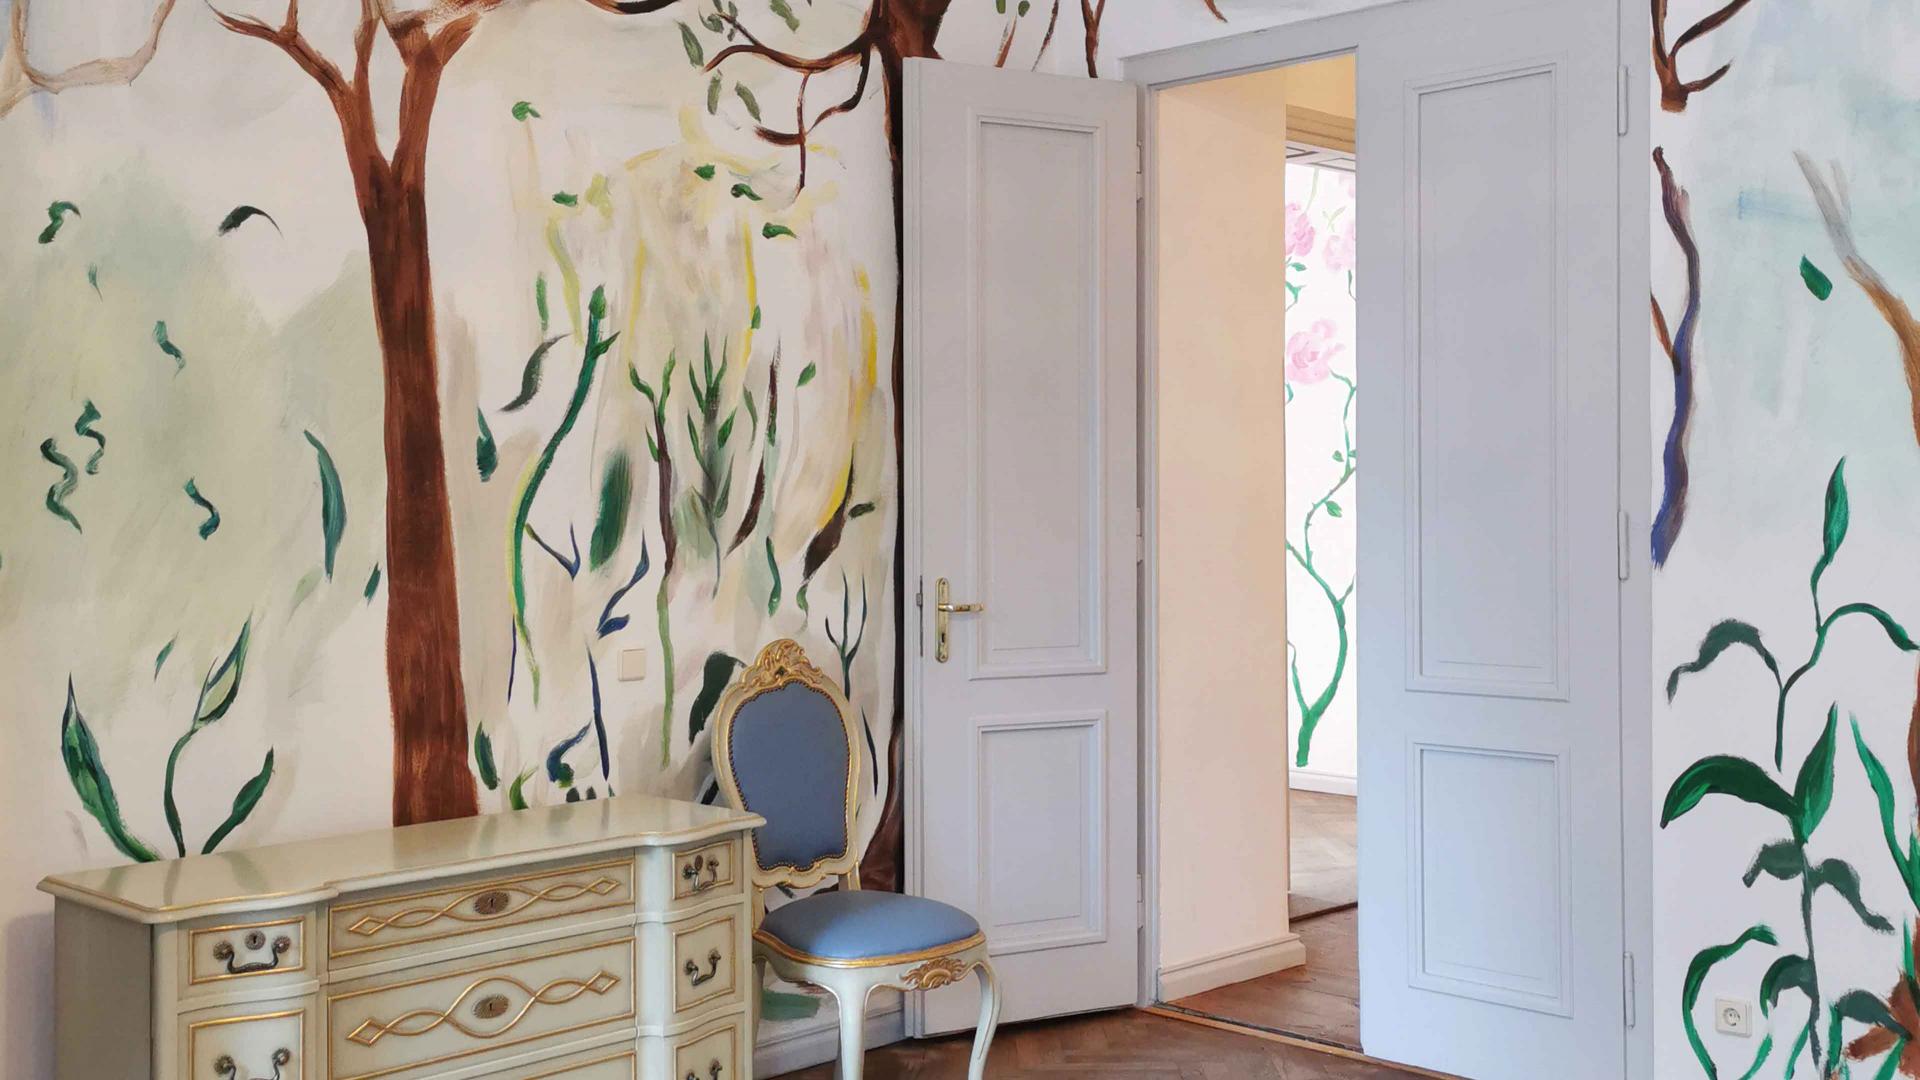 Weißer Raum mit barocken Möbeln und Wandmalerei.